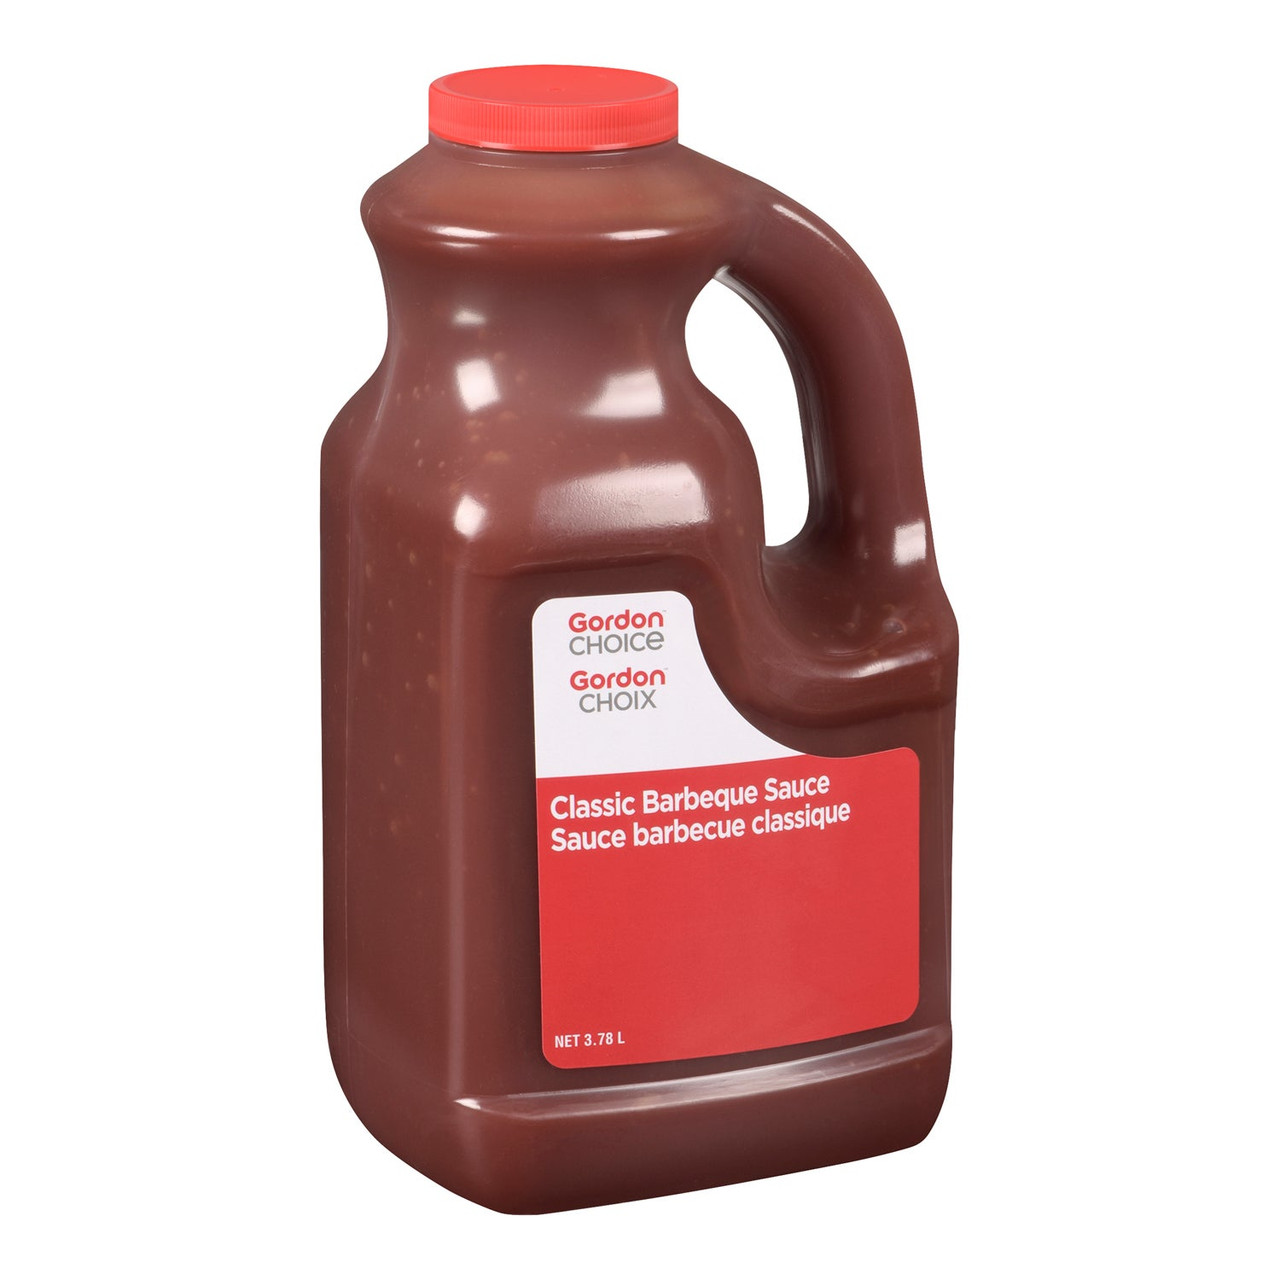 Gordon Choice Classic Barbeque Sauce | 3.78L/Unit, 2 Units/Case